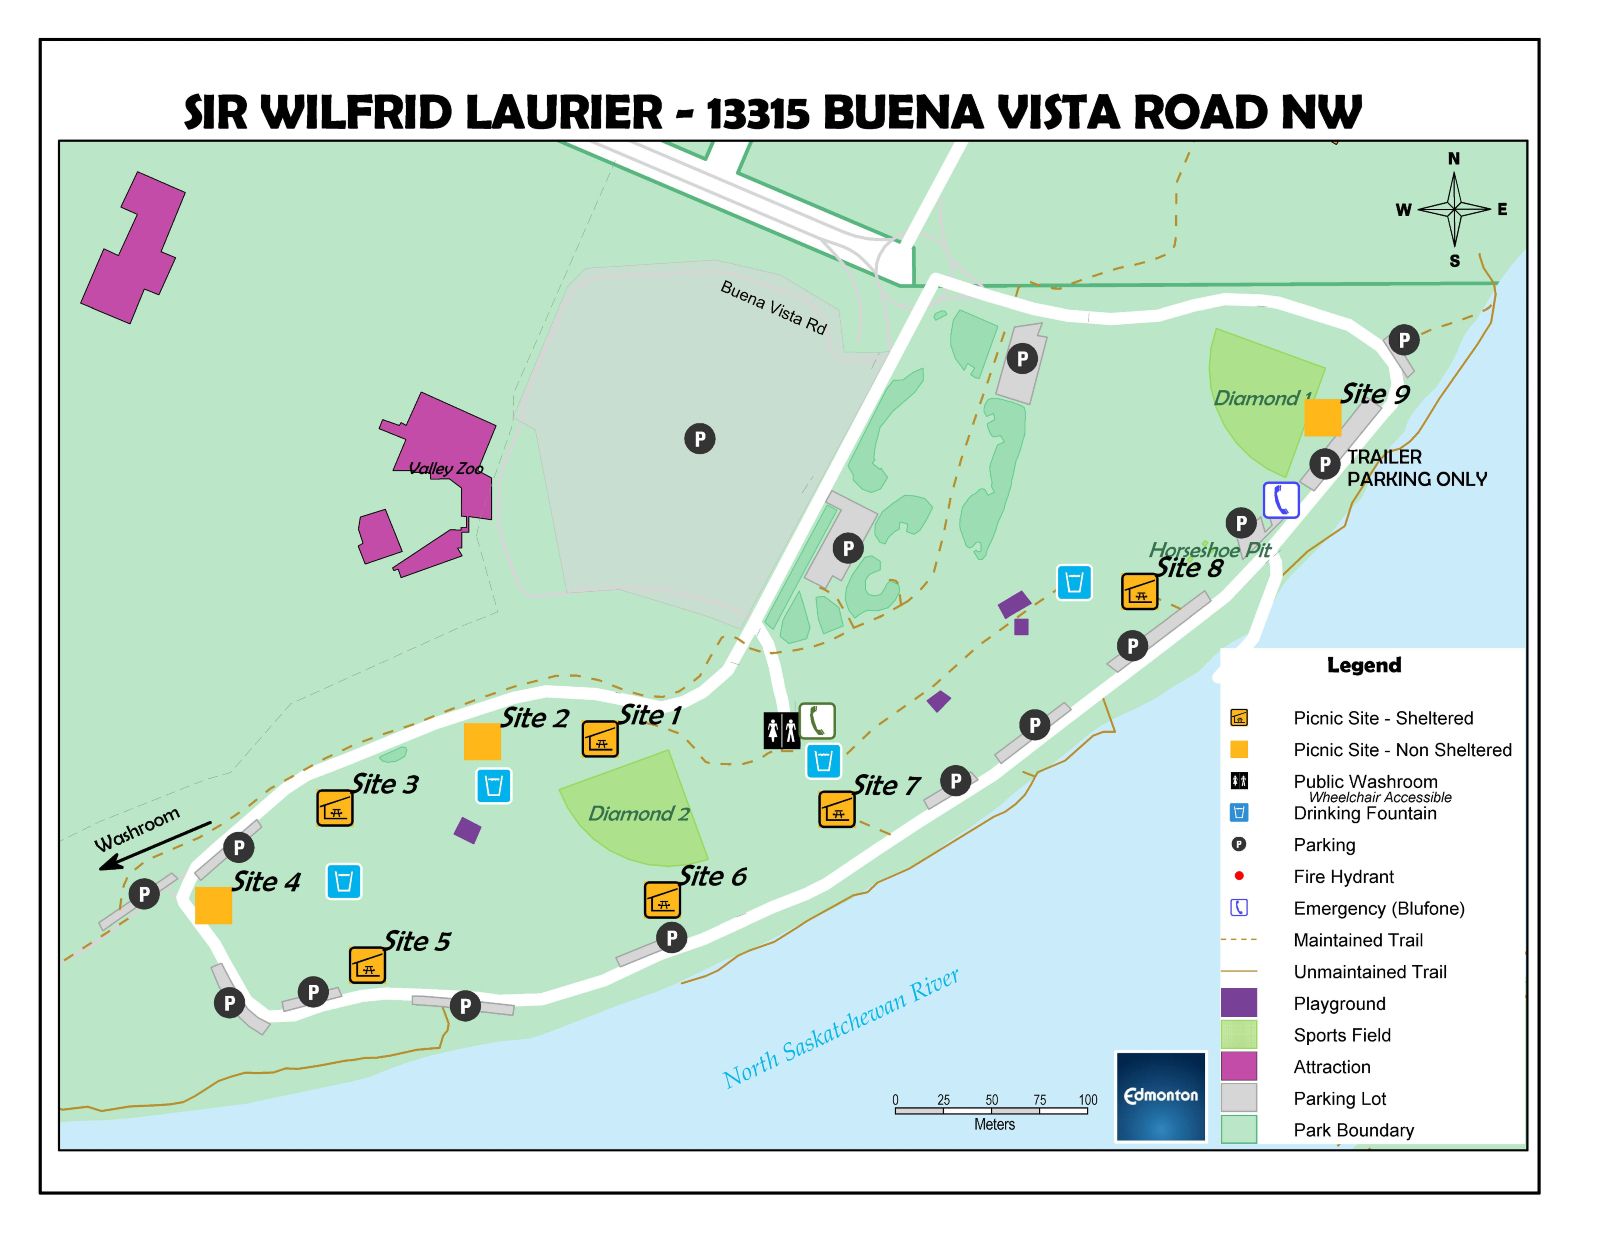 Laurier Park Site Map